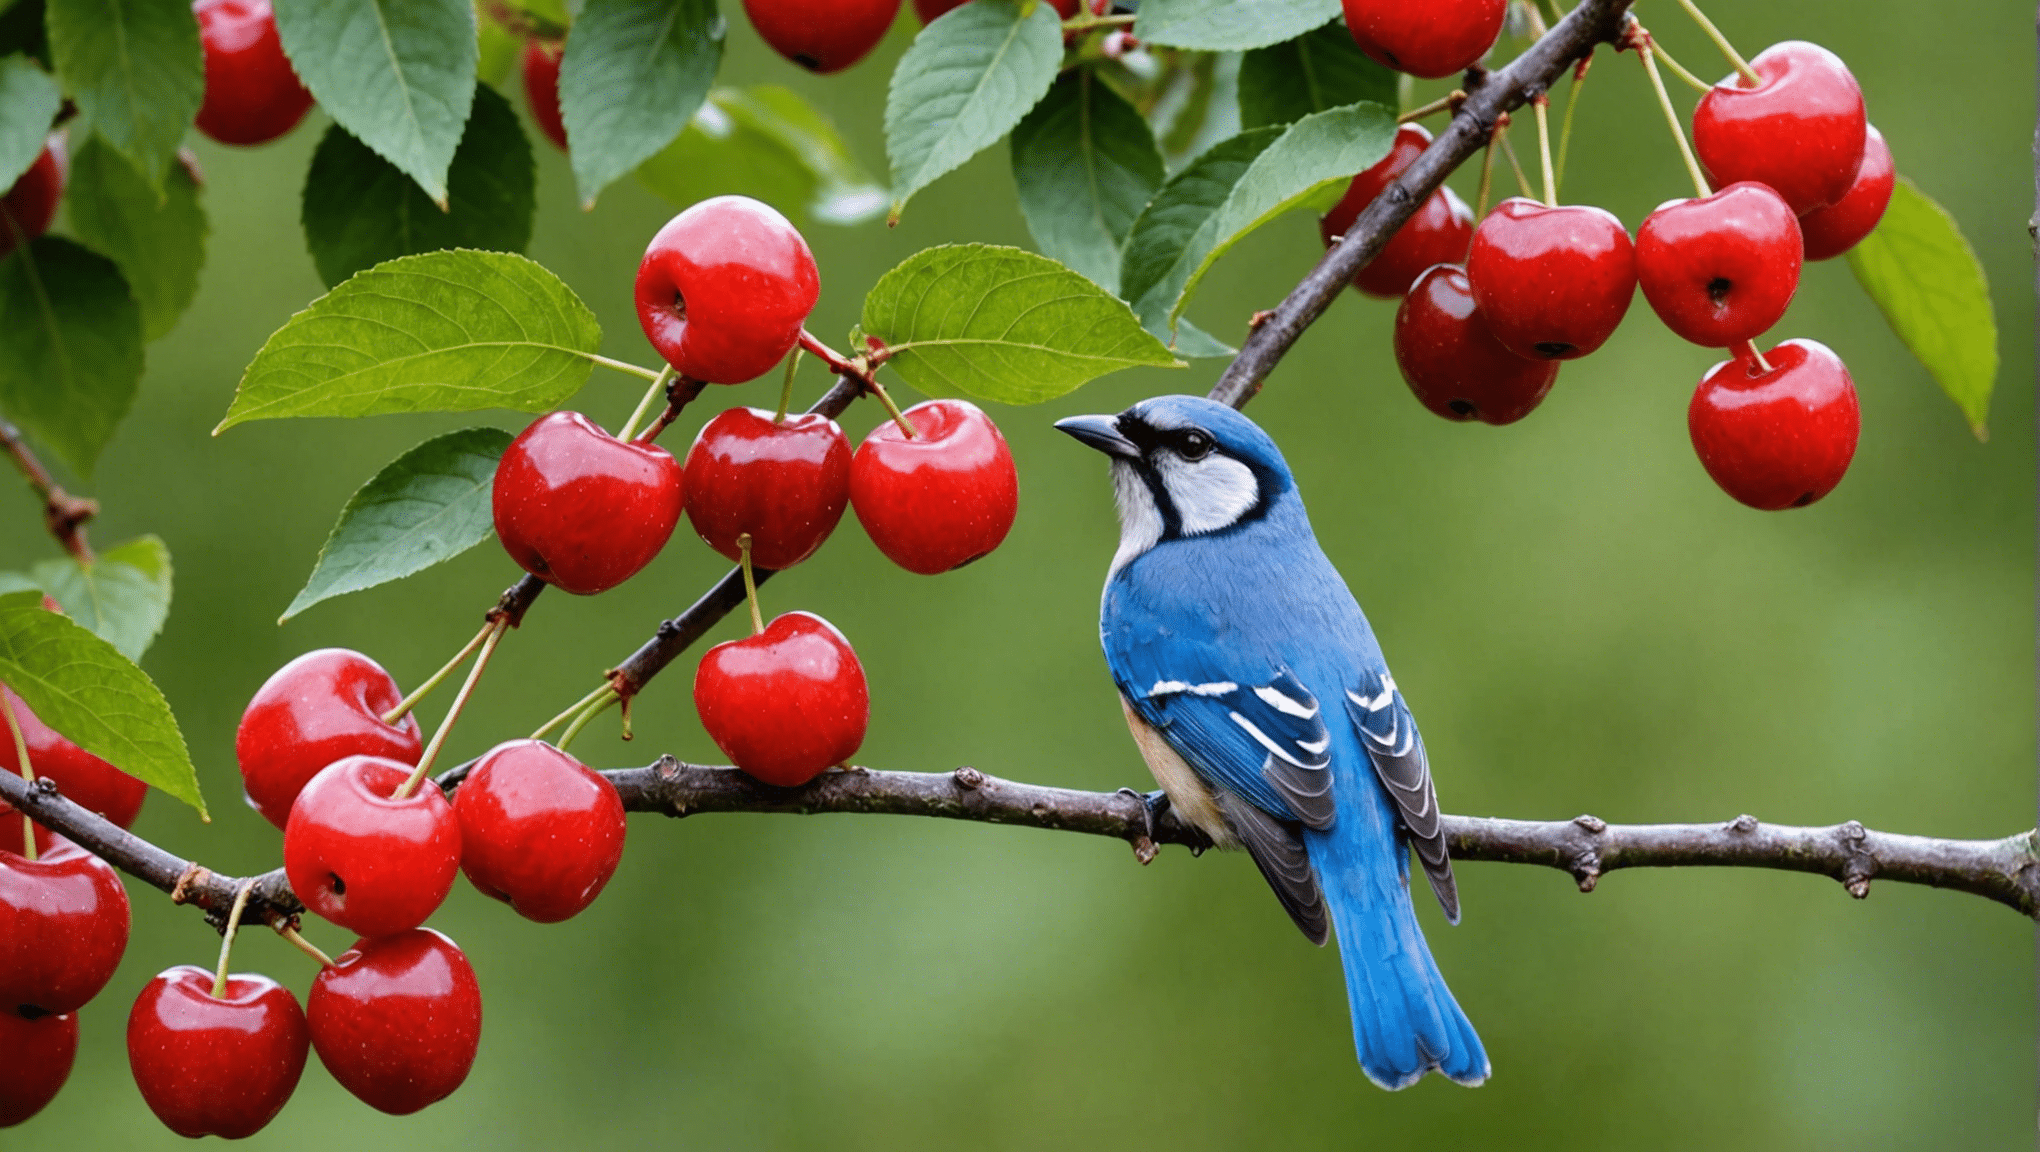 새들이 체리를 먹지 못하도록 방지하는 팁을 통해 체리를 새들로부터 보호하는 방법을 알아보세요.